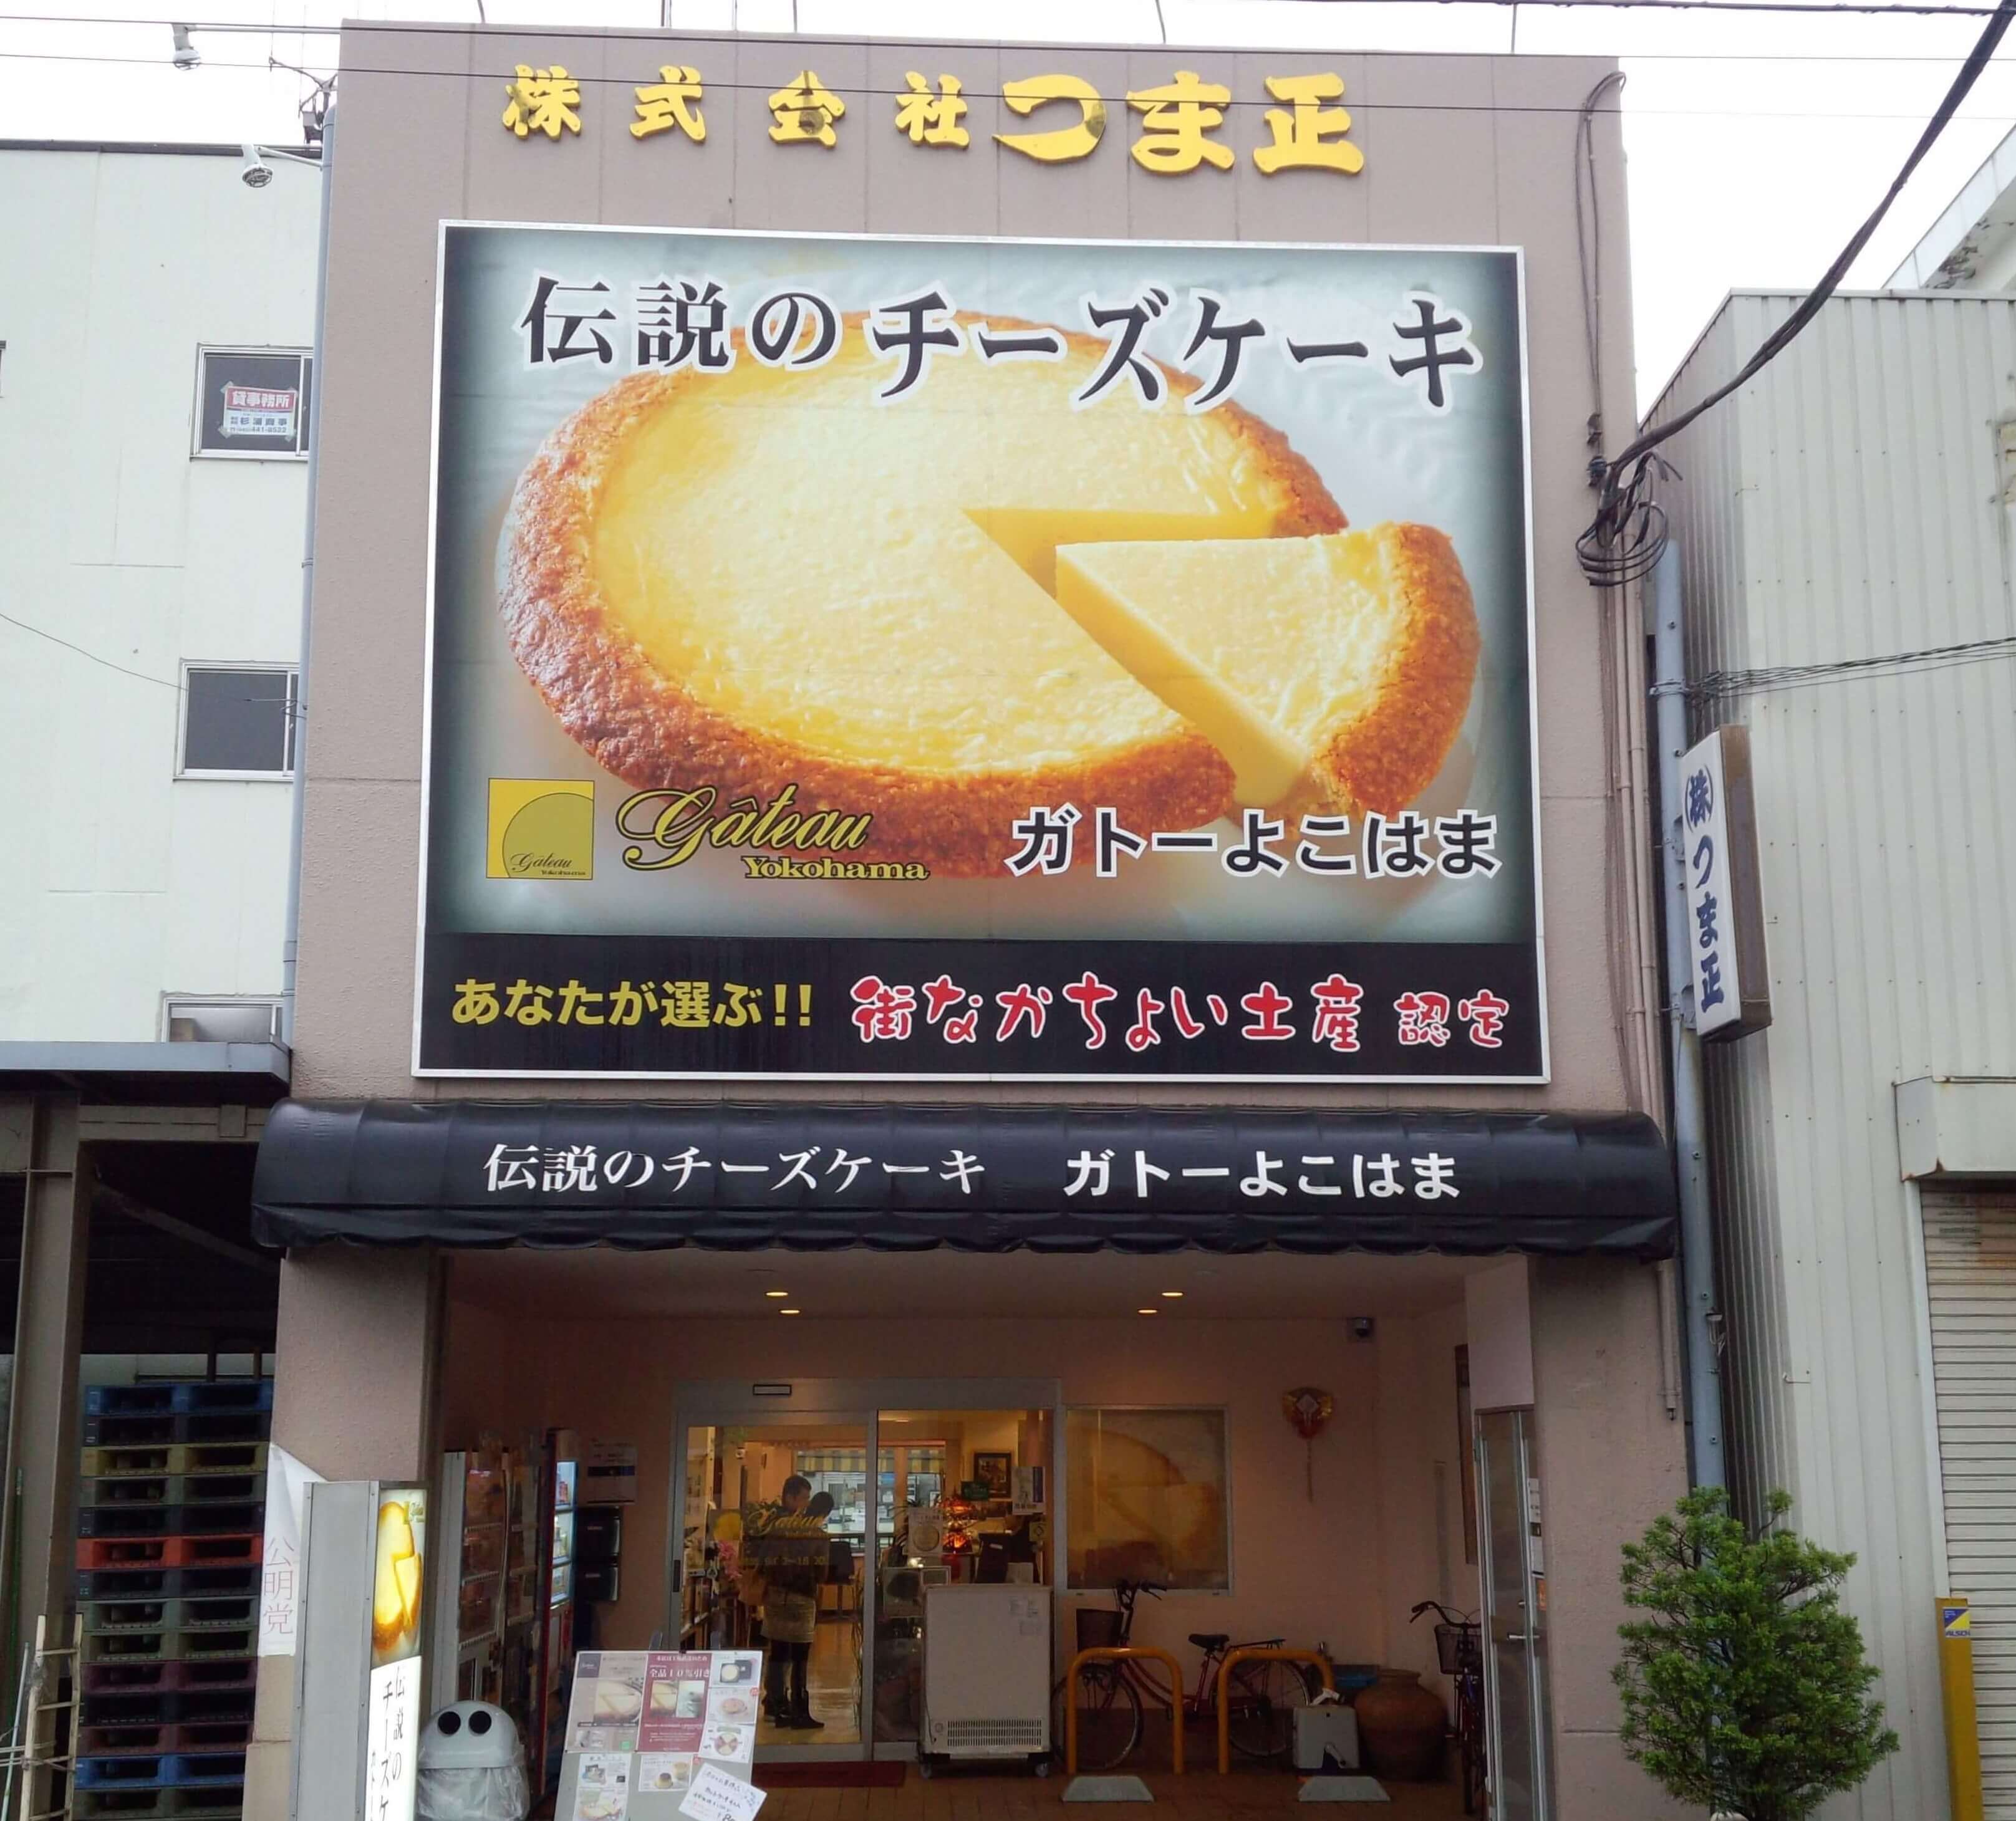 横浜 伝説のチーズケーキがお得に買える ガトーよこはま本店 エフペリ